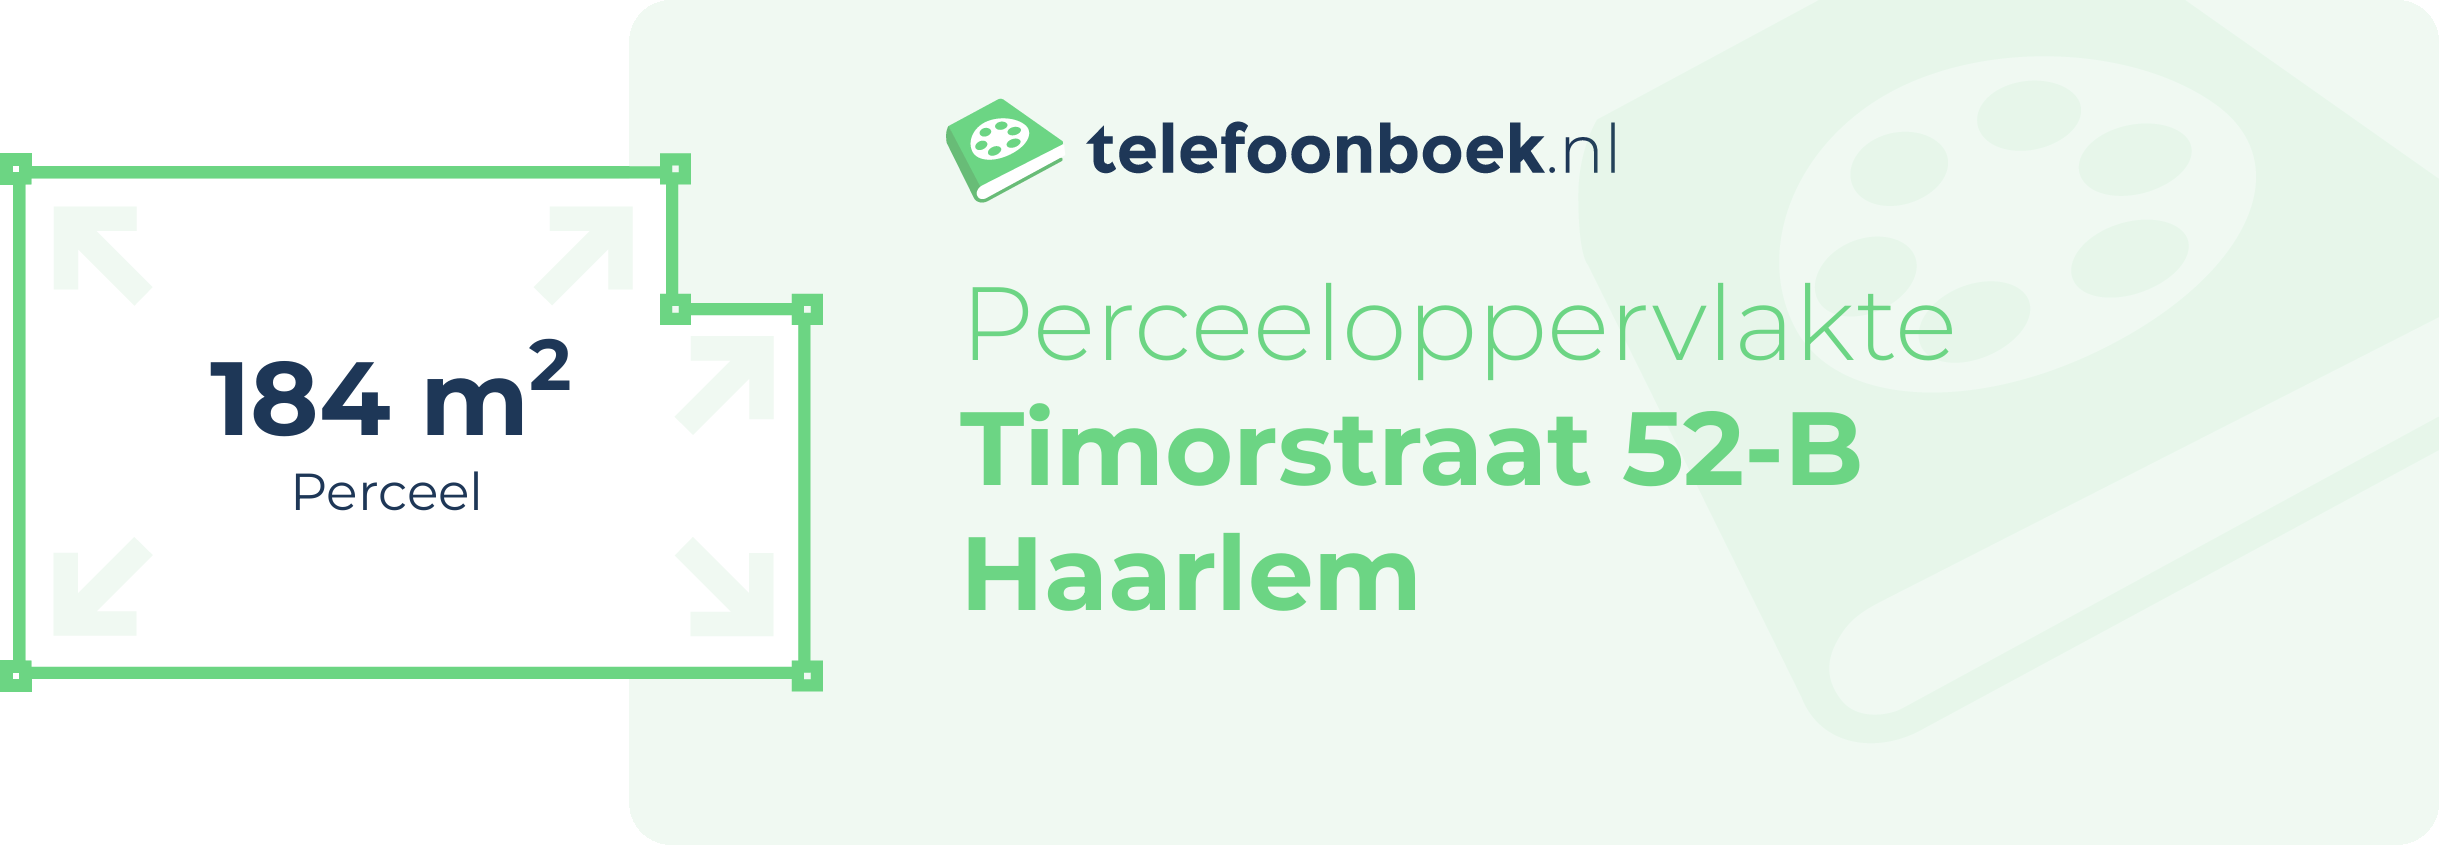 Perceeloppervlakte Timorstraat 52-B Haarlem